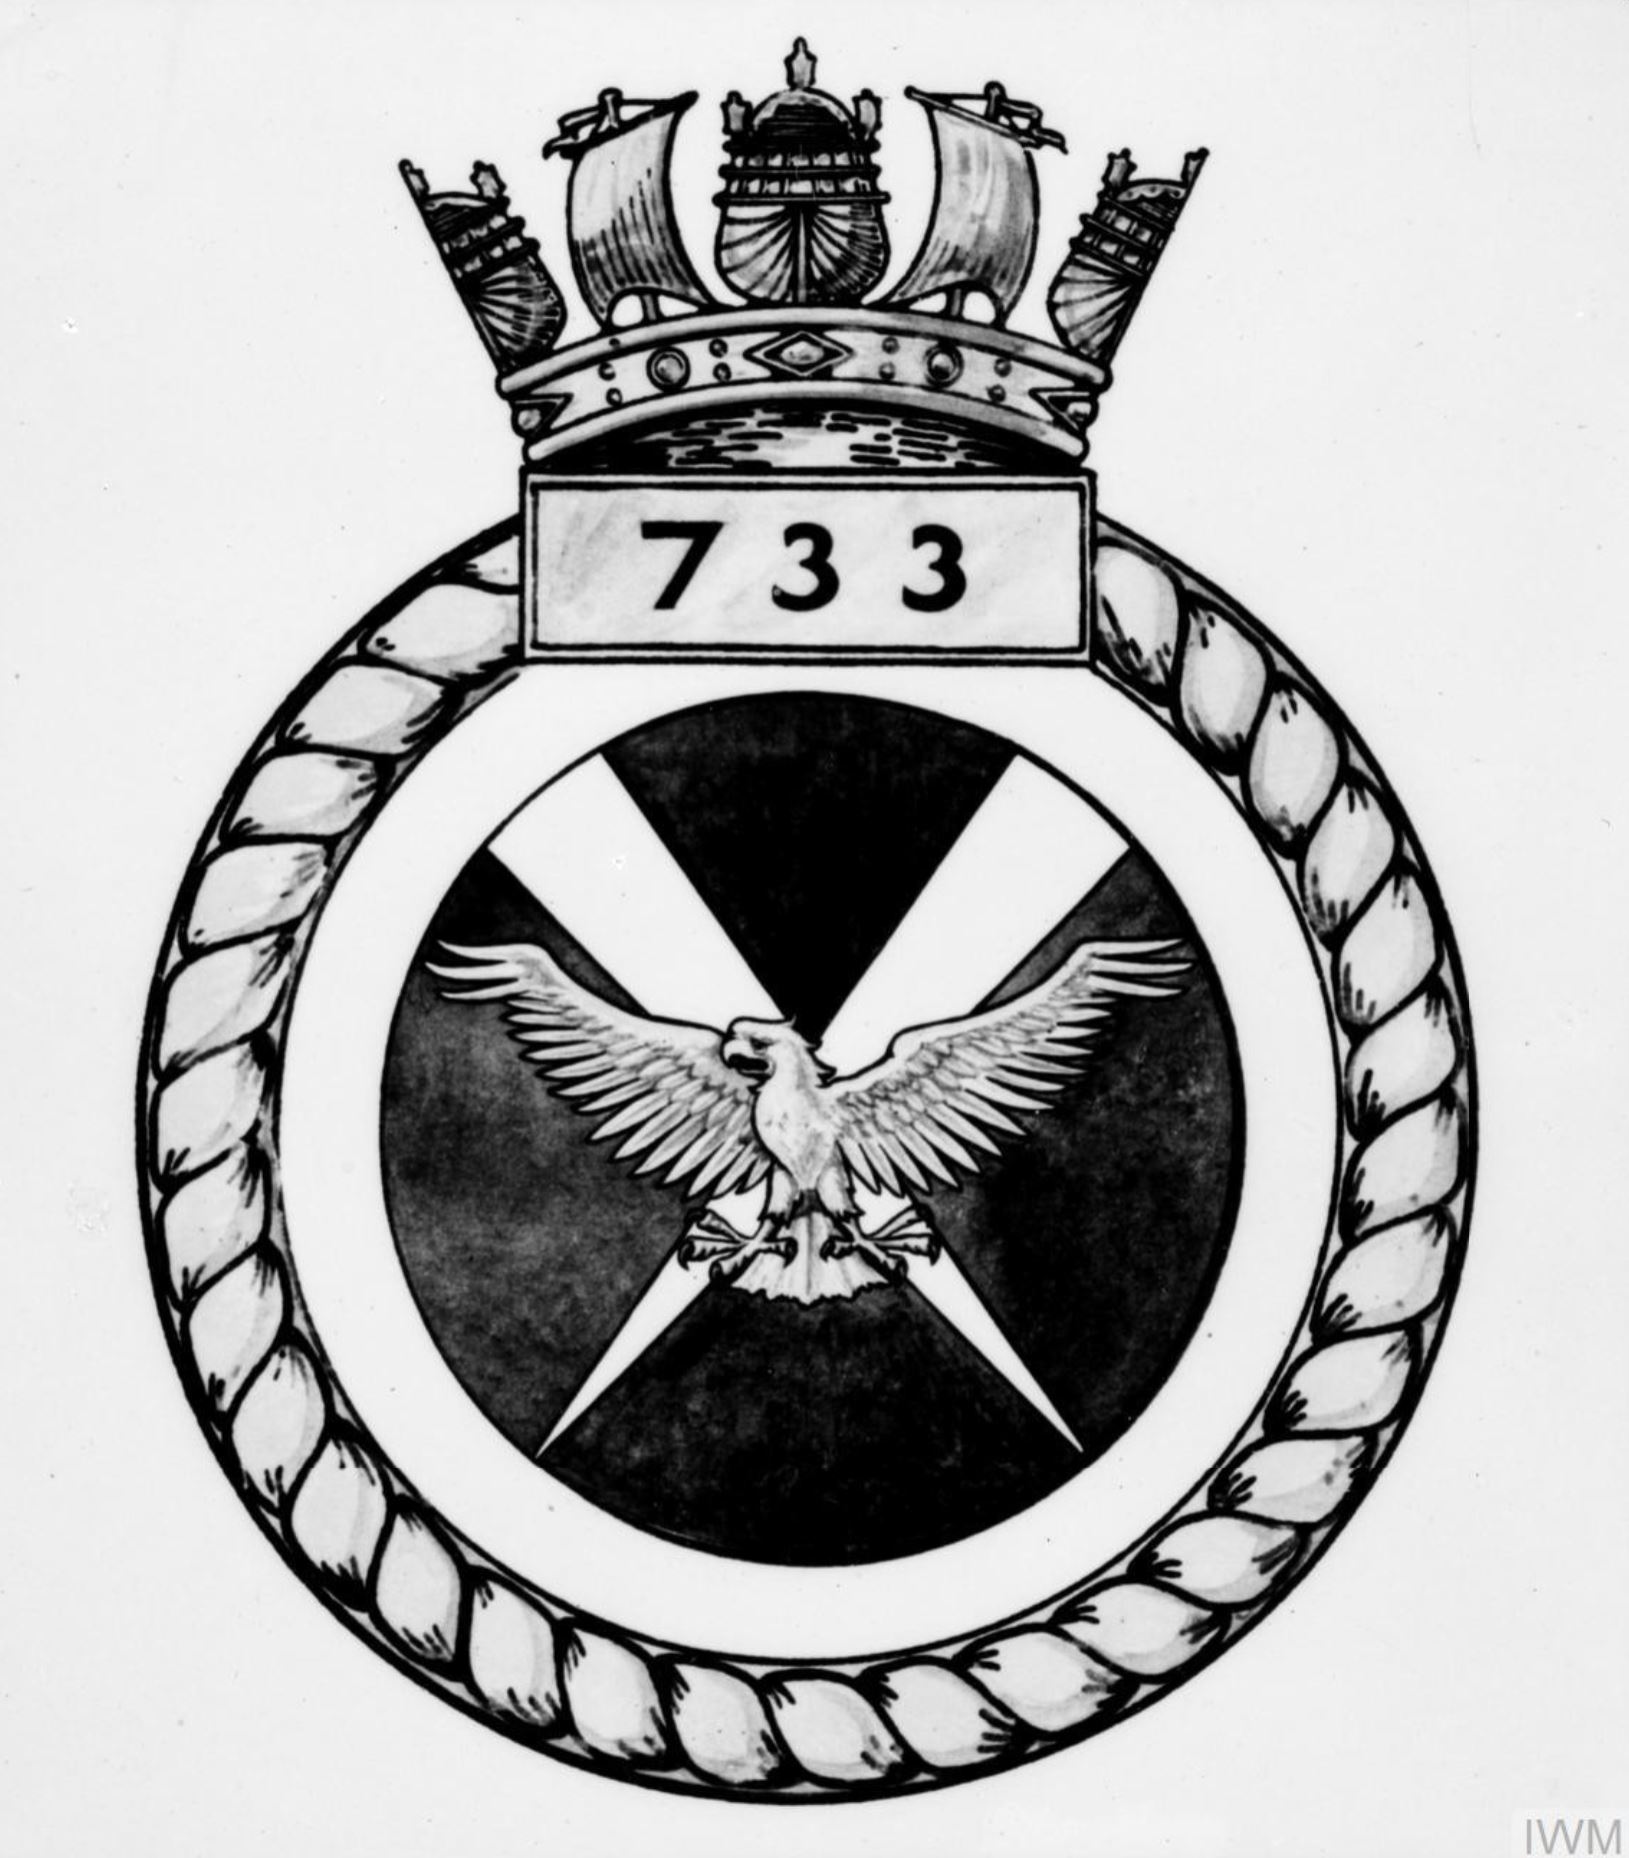 Fleet Air Arm crest of 733 Squadron IWM A28145